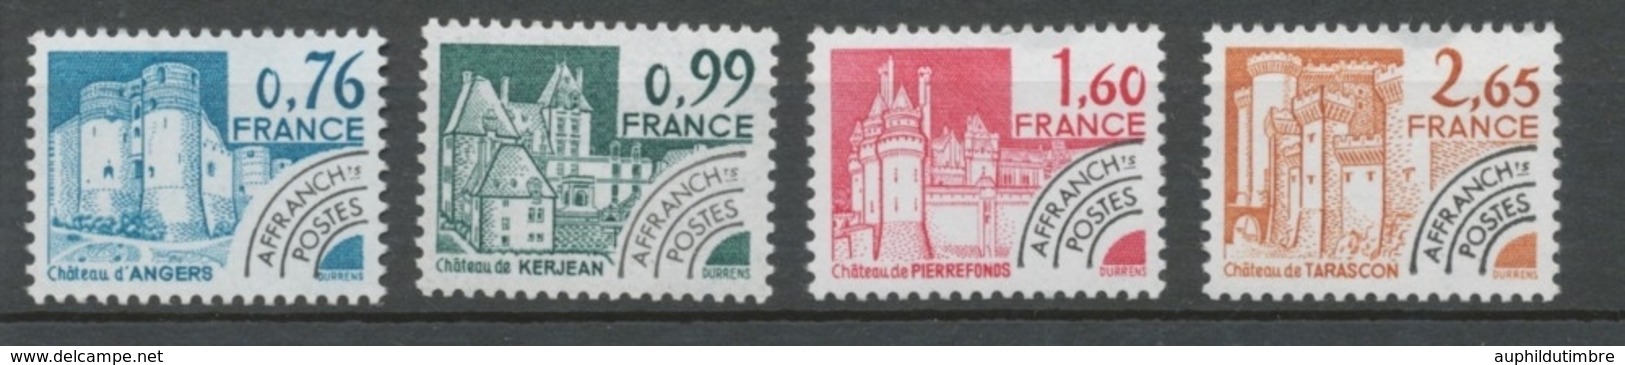 Préoblitérés N°166-169 Série Monuments Historiques 1980 ZP166A - 1964-1988